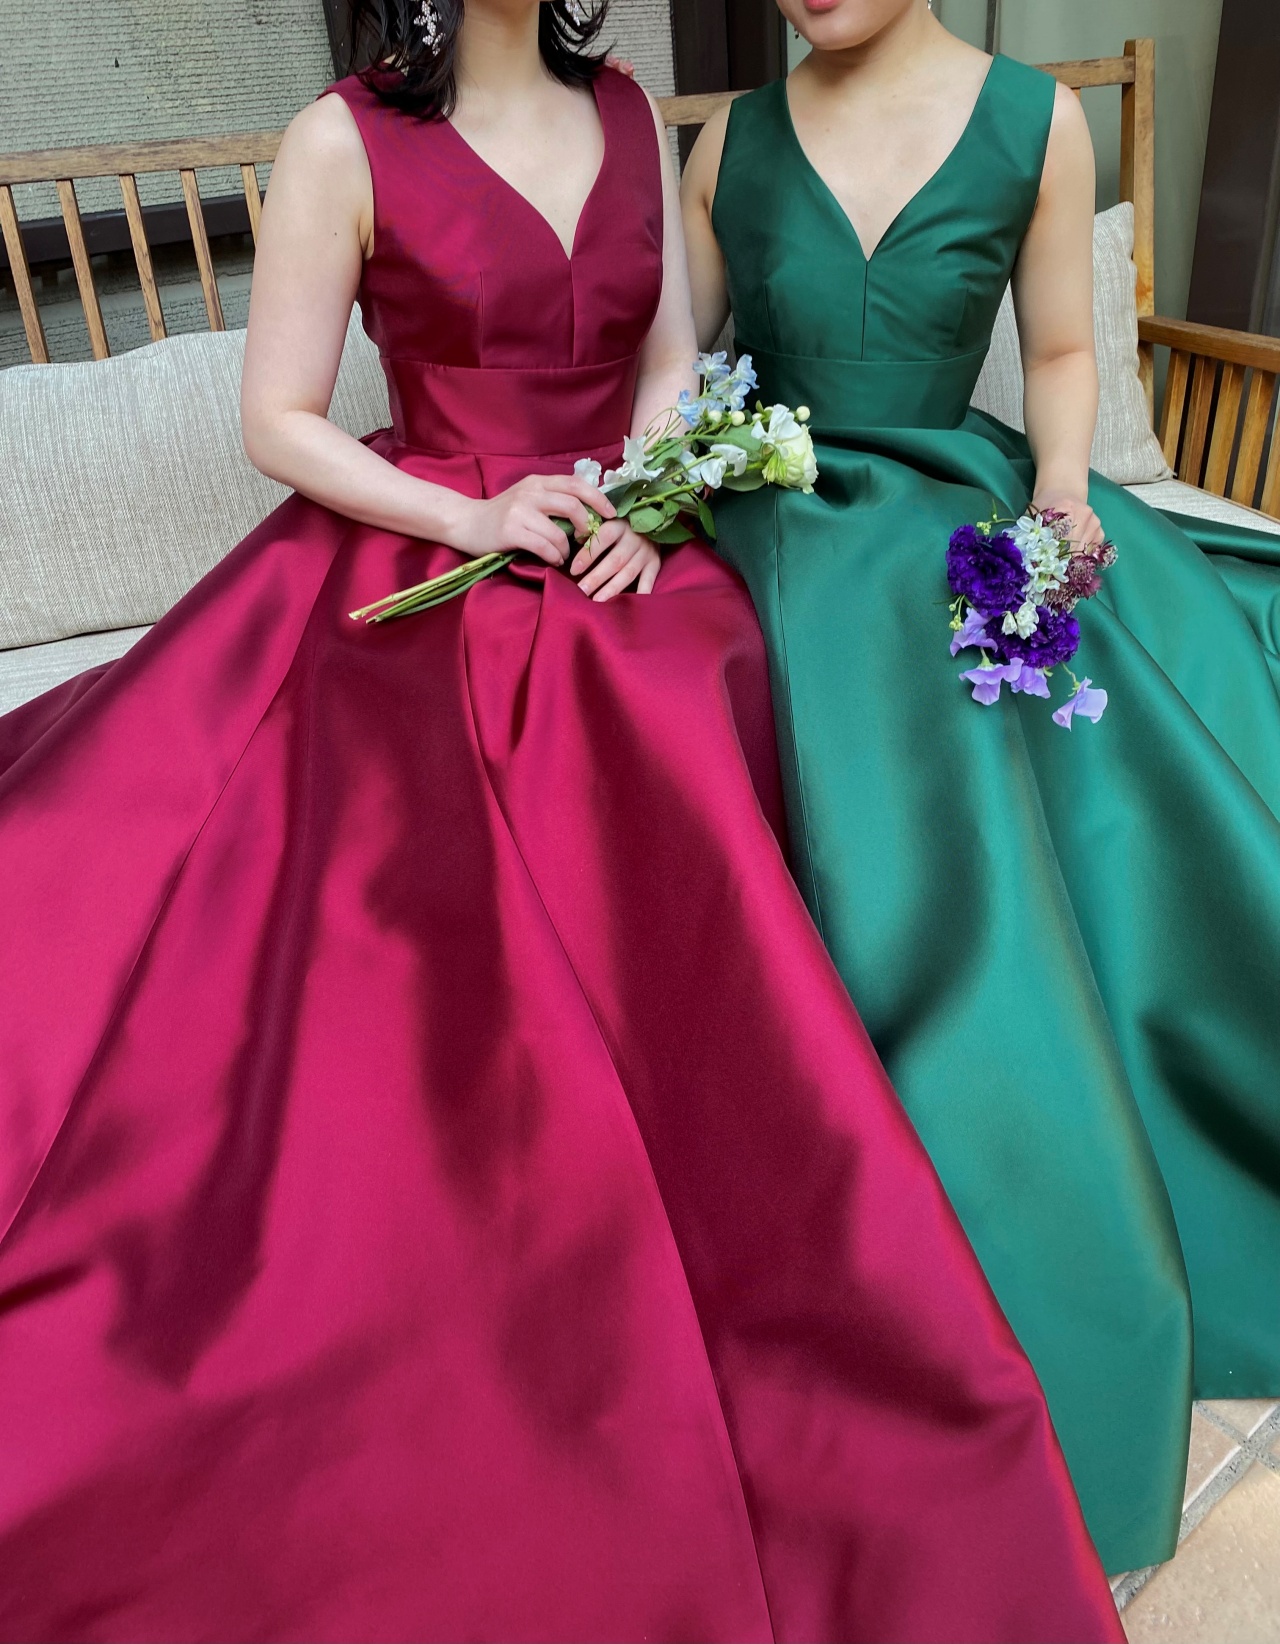 グリーンとボルドーの光沢が綺麗なサテン素材のAラインのカラードレス